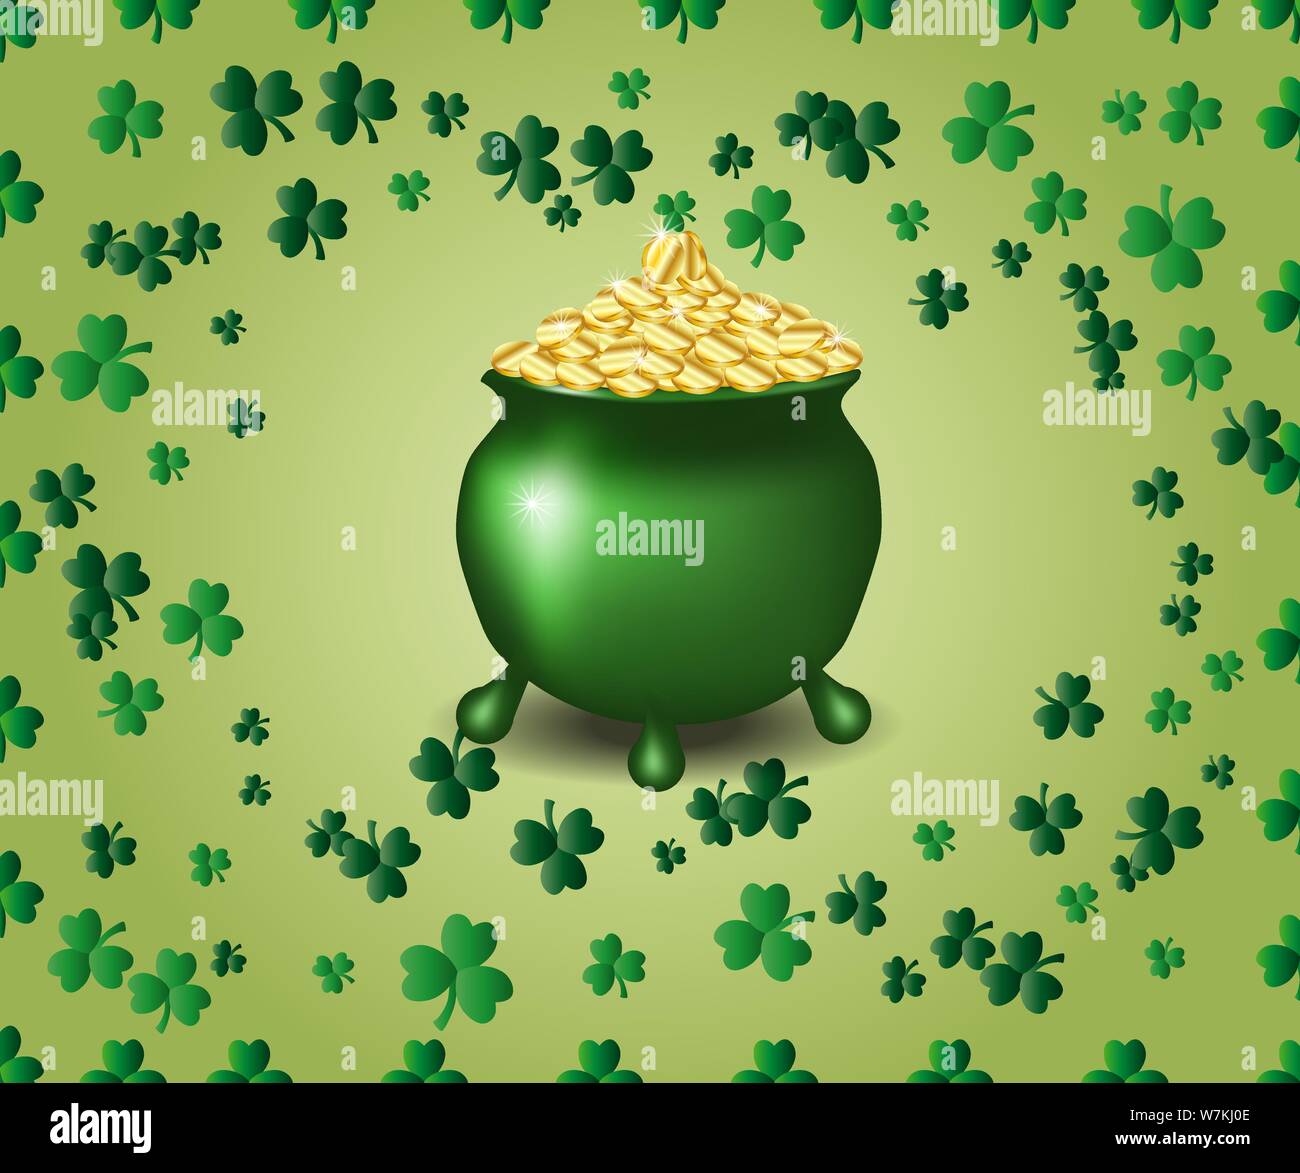 Saint Patrick's Day Greeting card avec un pot plein d'or vert, coinss parkled les feuilles de trèfle vert Illustration de Vecteur